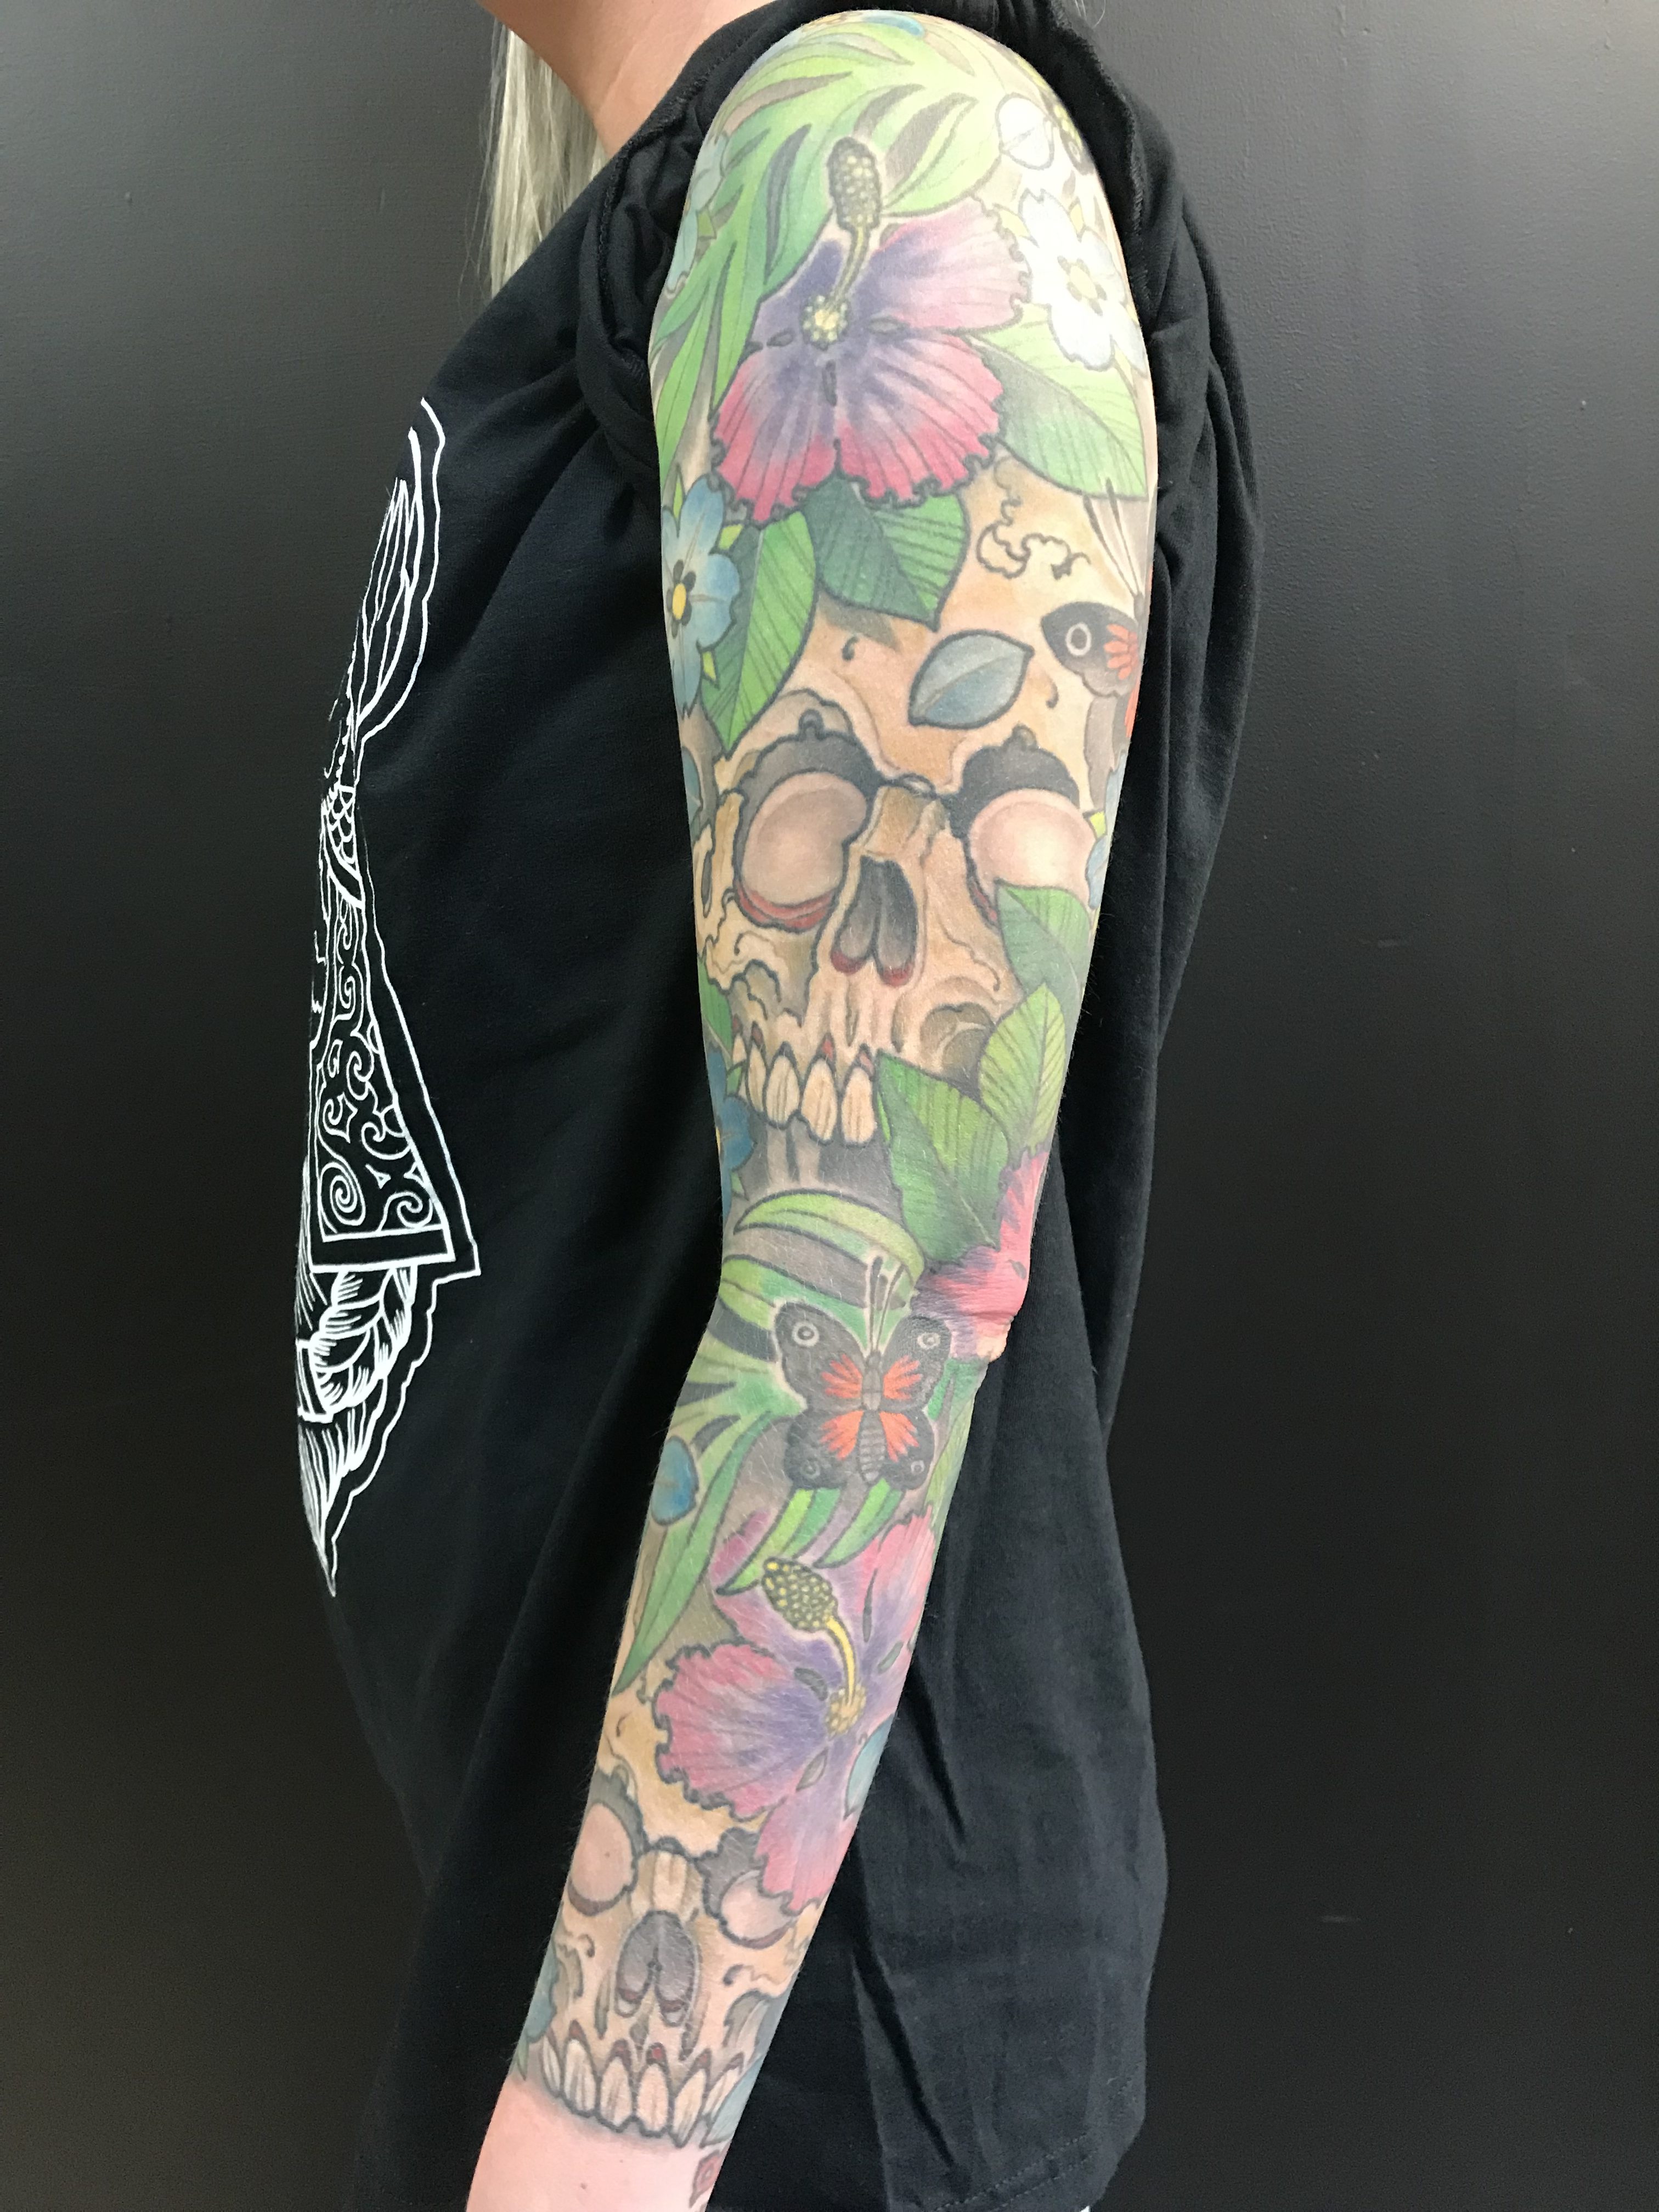 Forrest Makay tattoo 2019 Okanagan Tattoo Show & Brewfest Artist